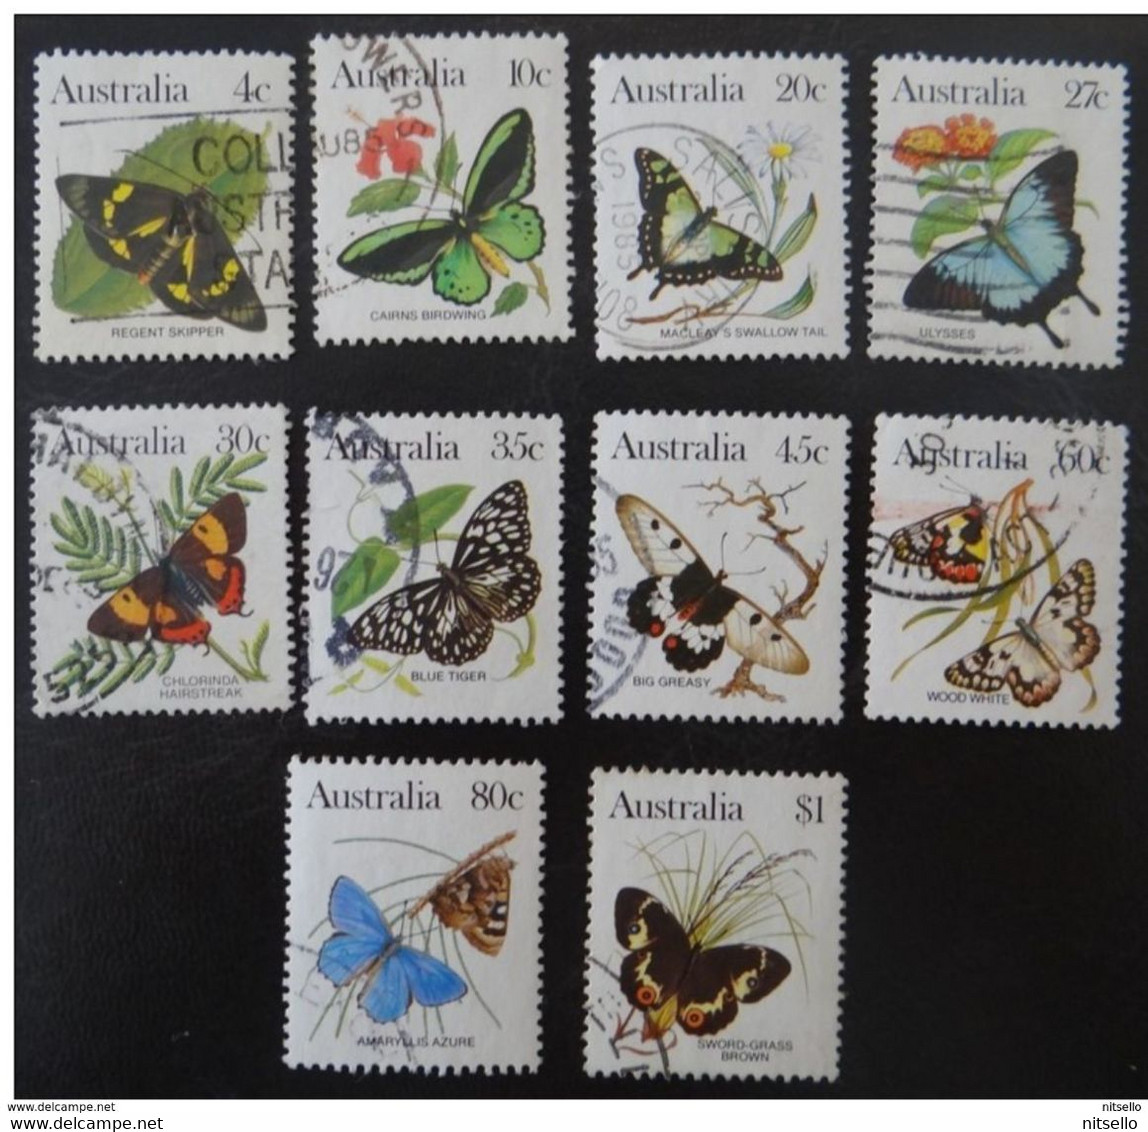 LOTE 1527   ///  (C175) Australie, Série Complète YT 825/834 Oblitérée , Papillons (1983)   //   CATALOG/COTE: 6,50€ - Used Stamps